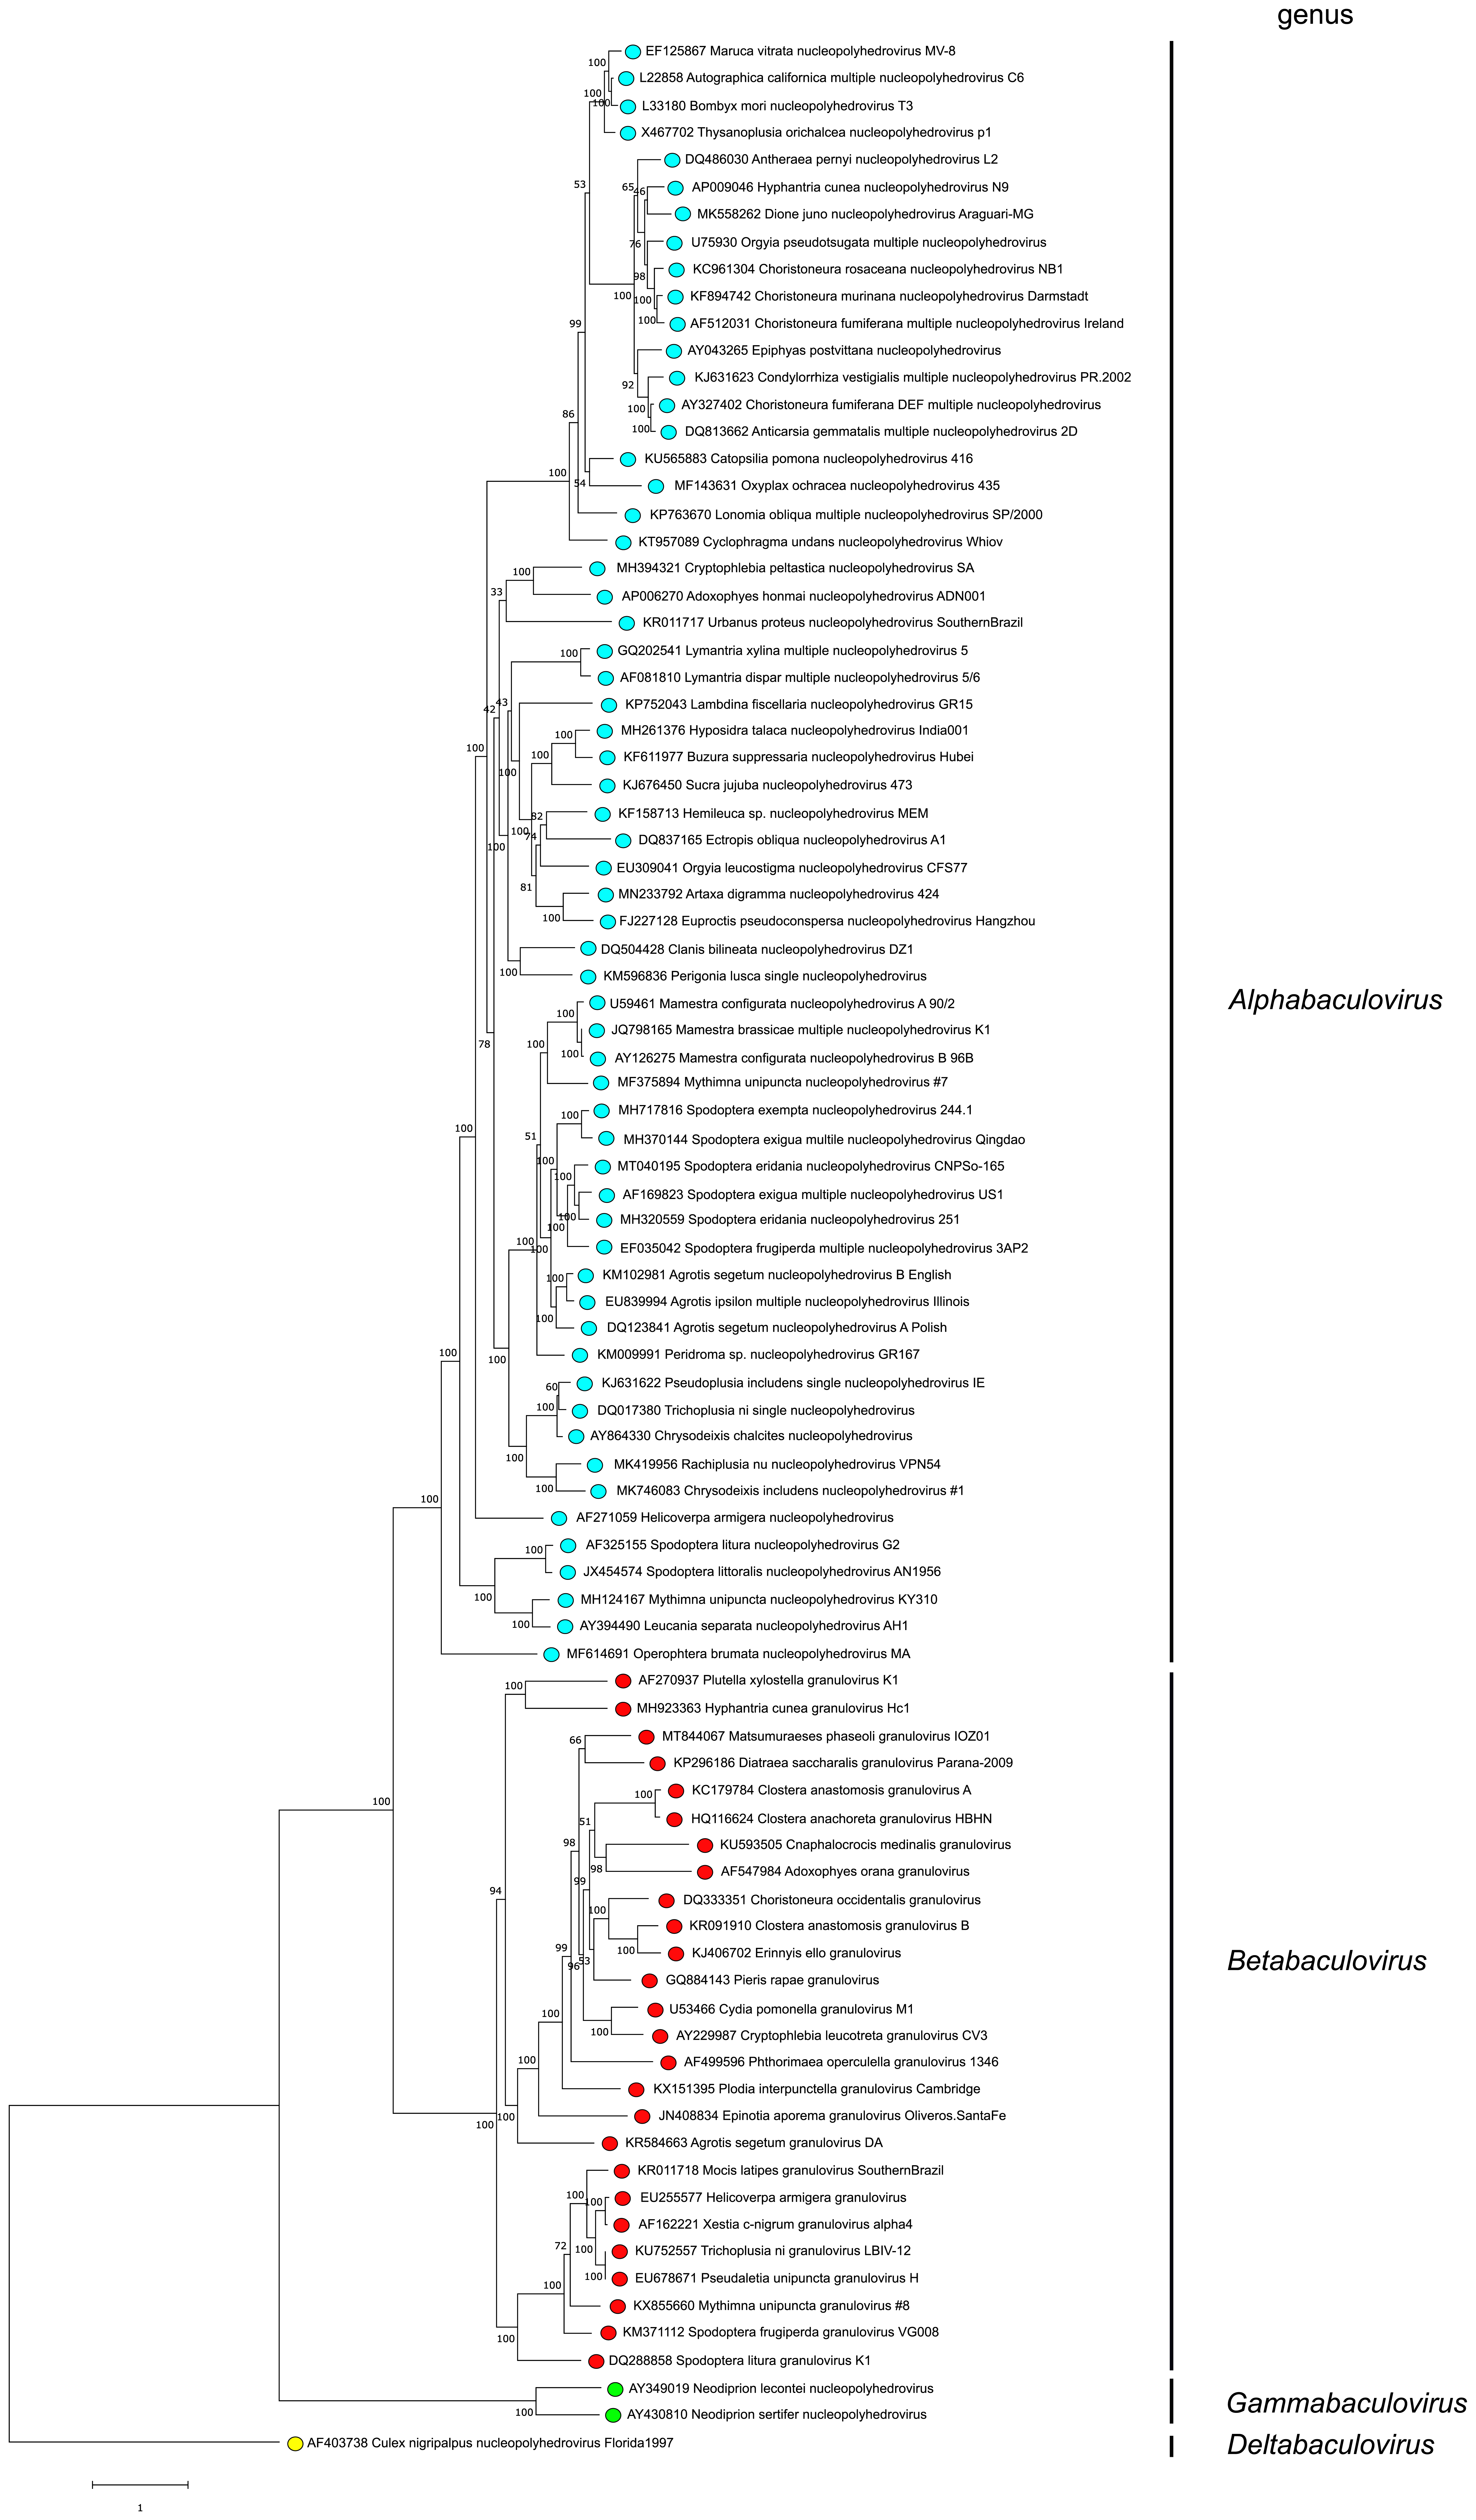 Phylogenetic tree of family Baculoviridae